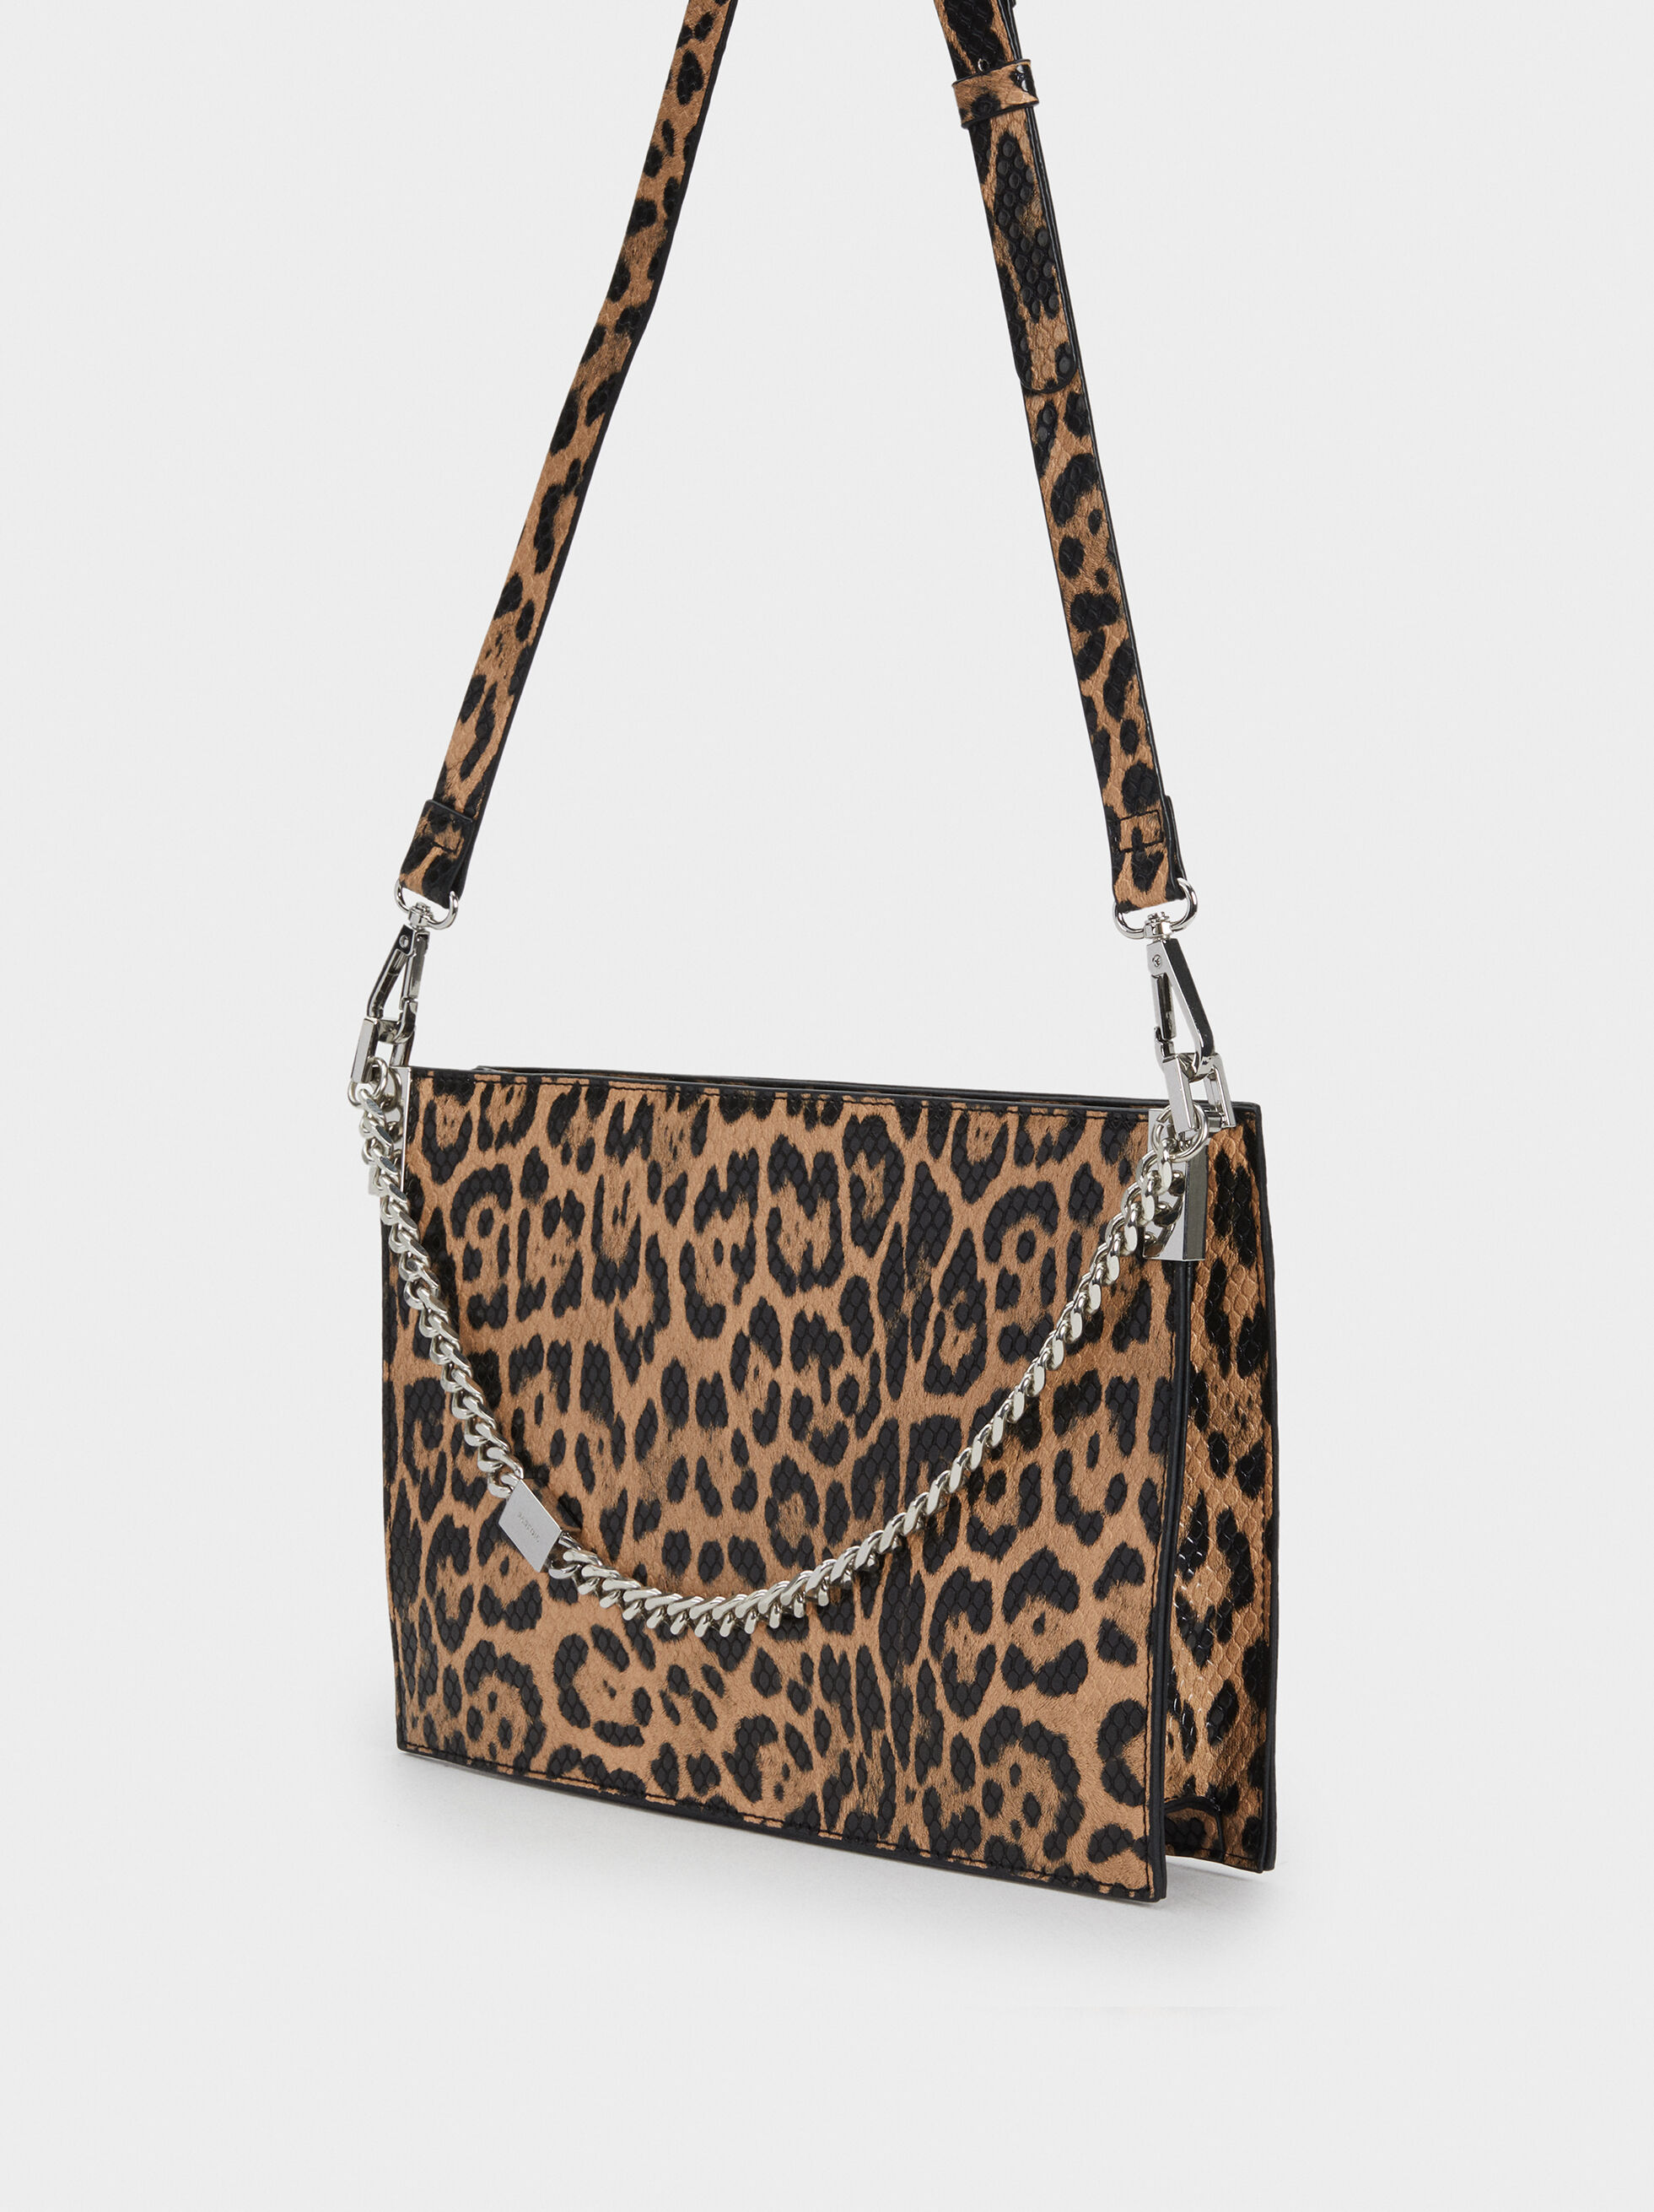 animal print handbag